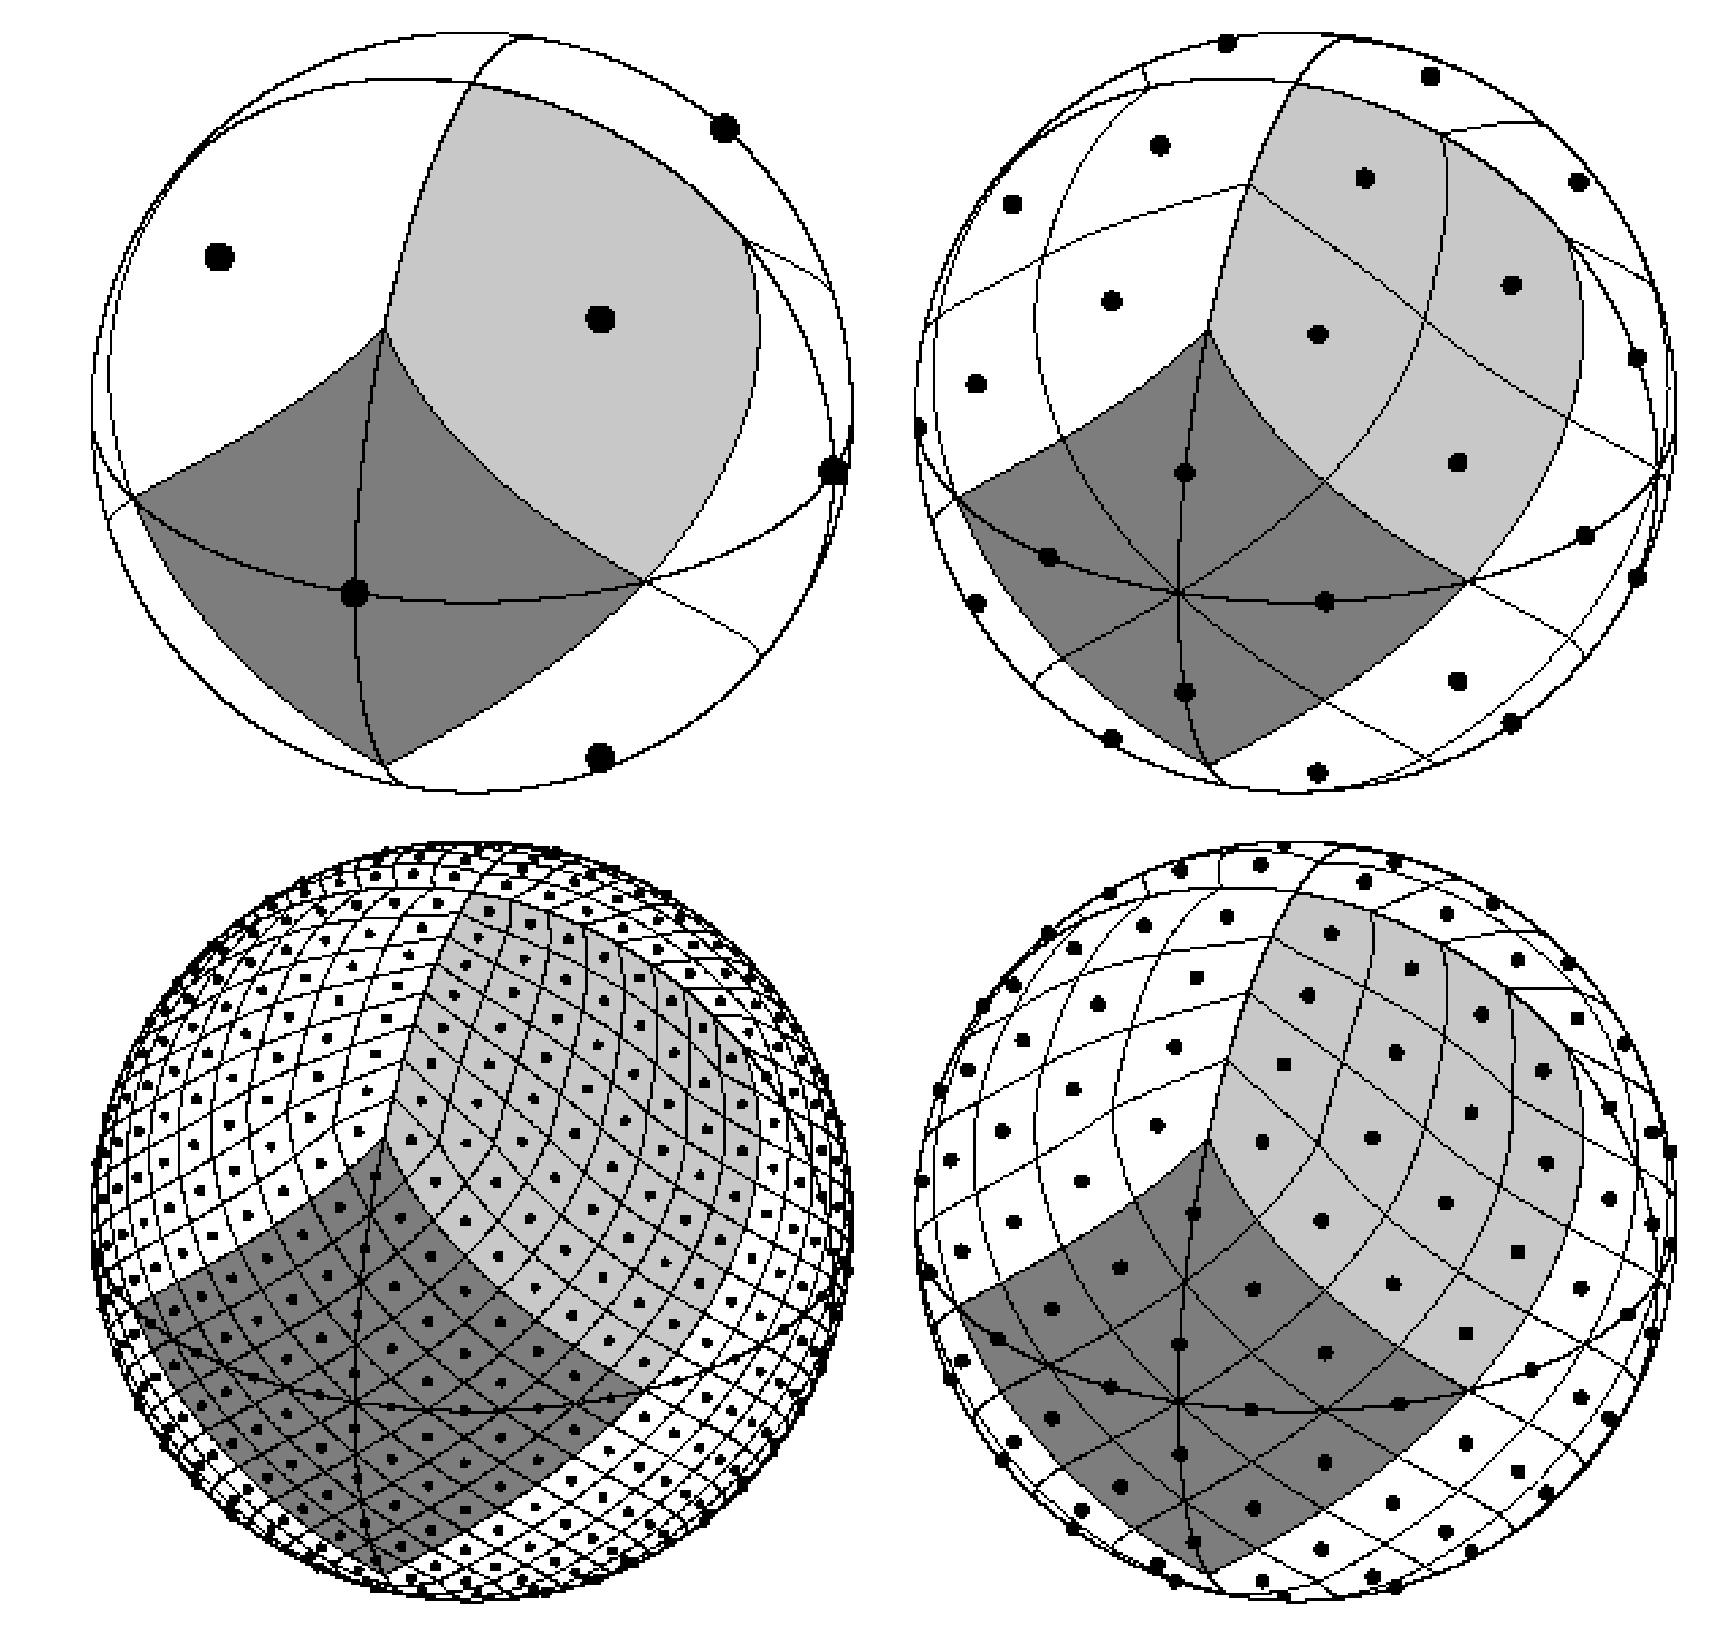 HEALPix pixels on a sphere, each pixel splitting into 4 with 2x increase in Nside.